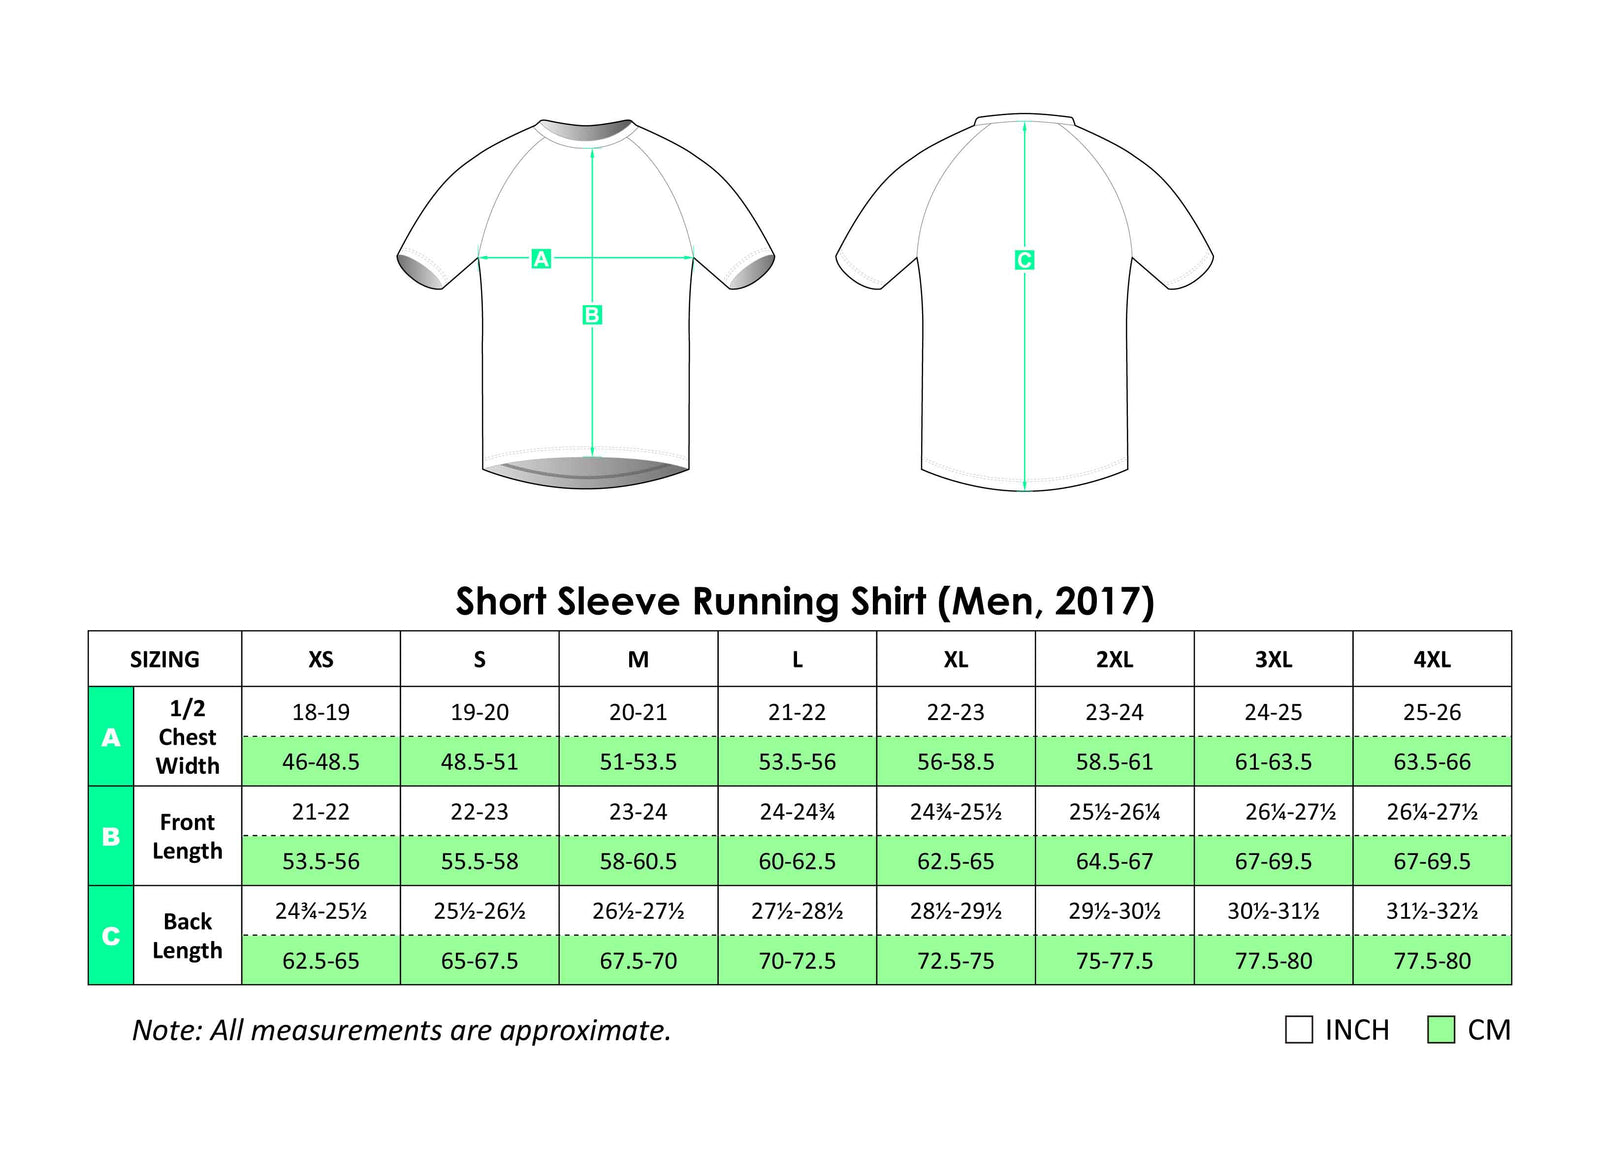 GTC MEN CB003 Running Short Sleeve T Shirt